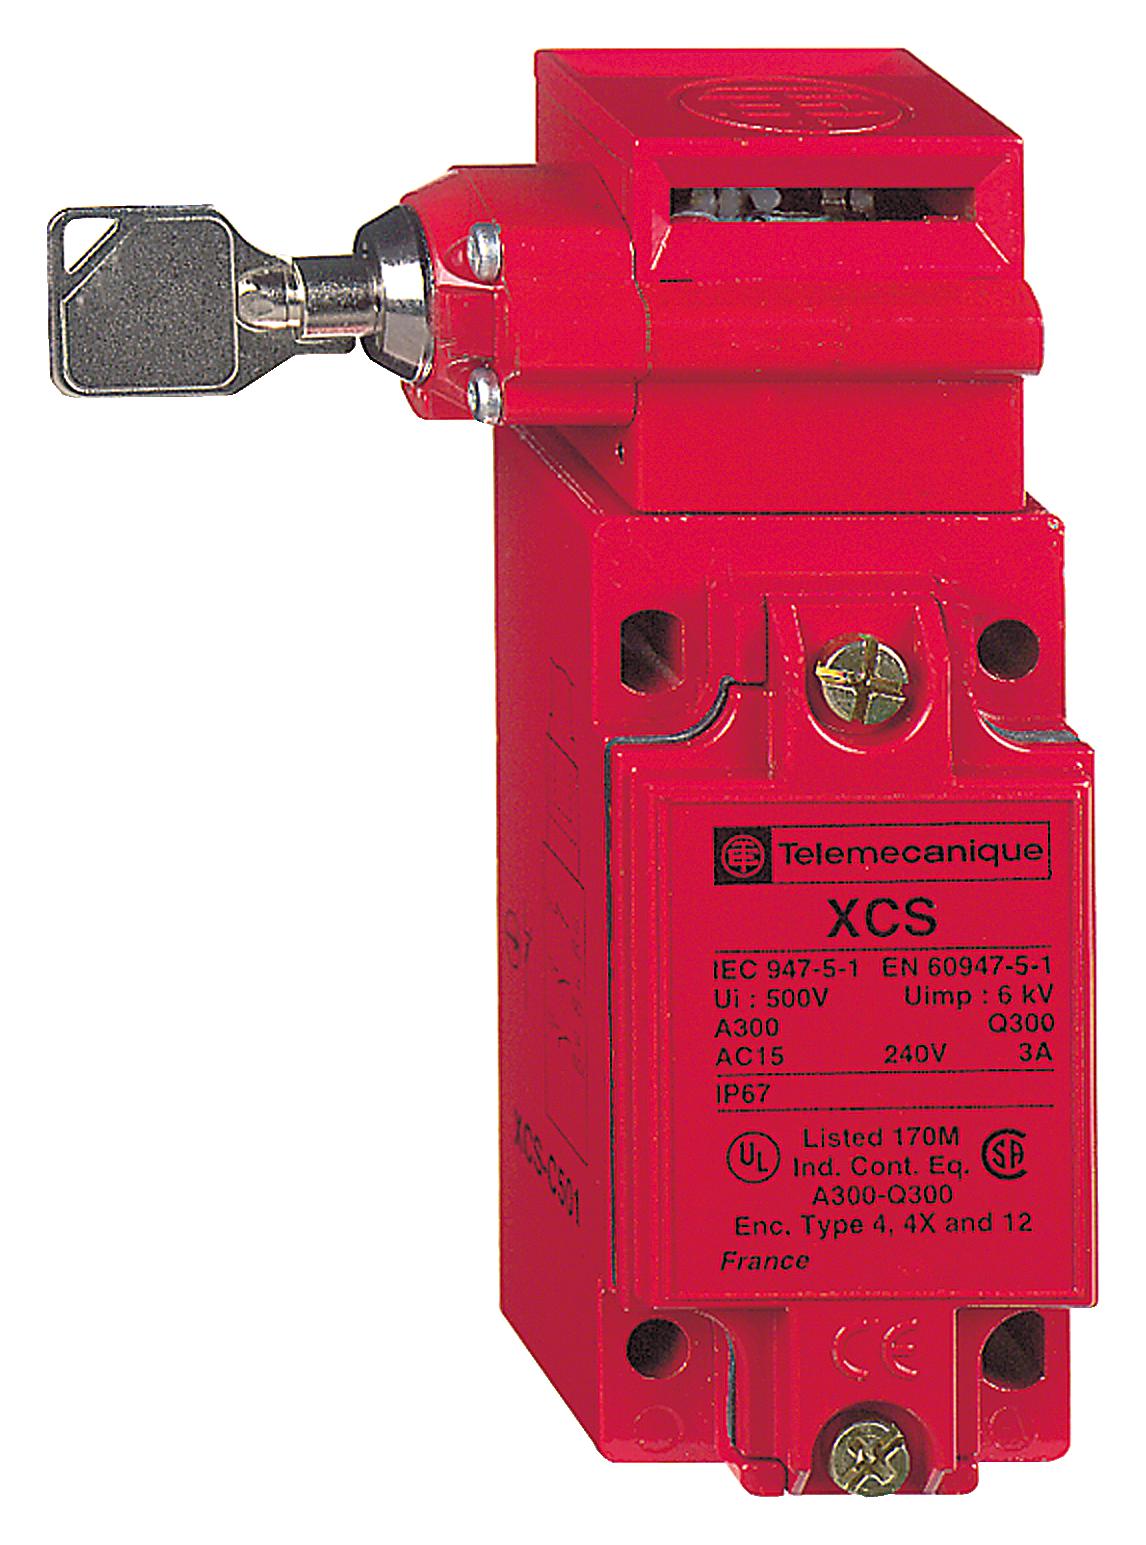 SCHNEIDER ELECTRIC Safety interlock XCSC513 SAFETY SWITCH, DPST-NO/SPST-NC, 6A, 120V SCHNEIDER ELECTRIC 3215156 XCSC513